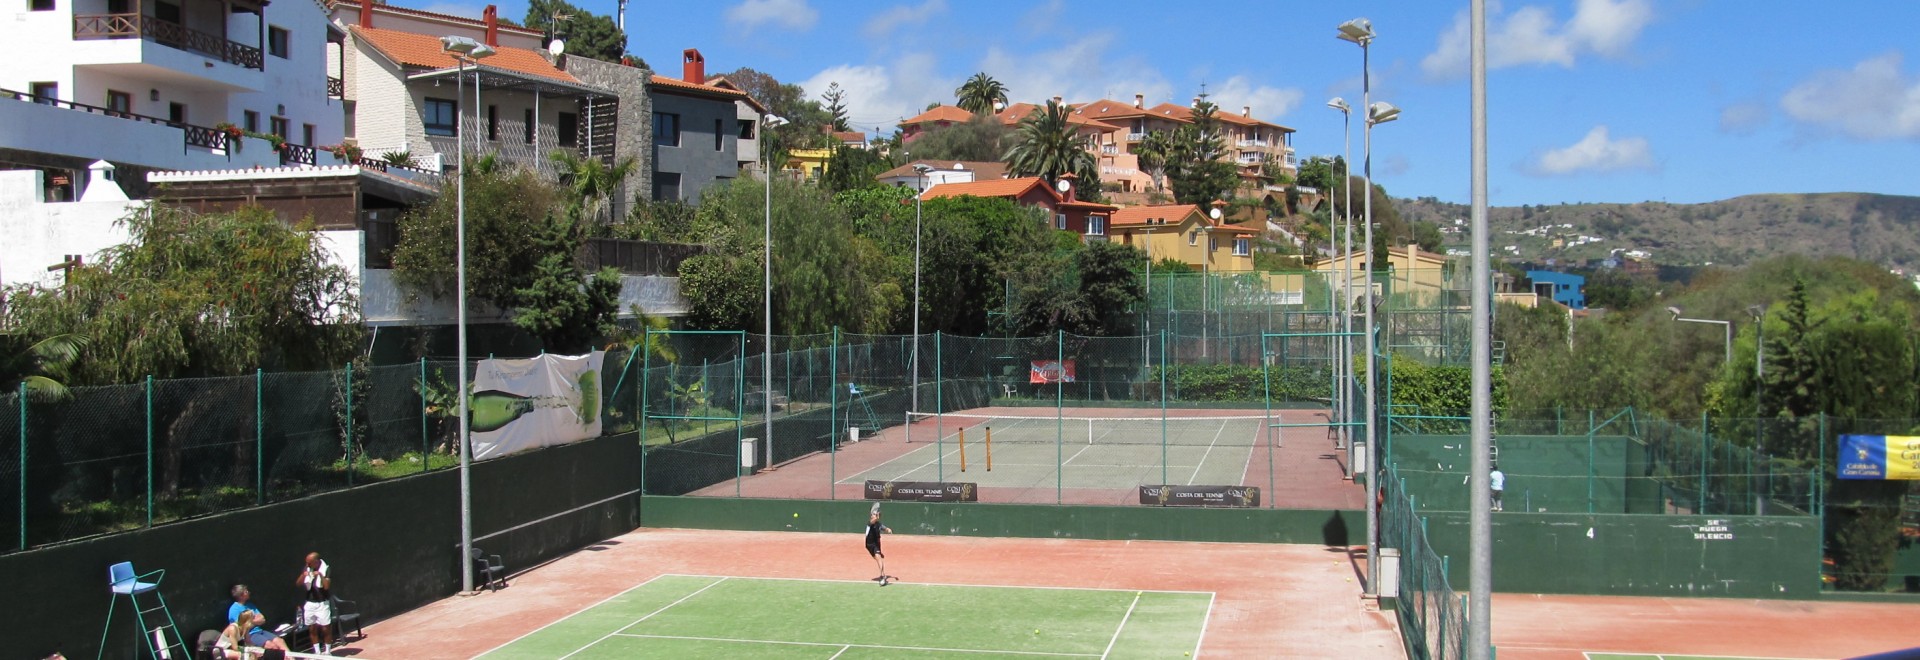 Costa Del Tennis Adult Tennis Camp - Gran Canaria, Canary Islands